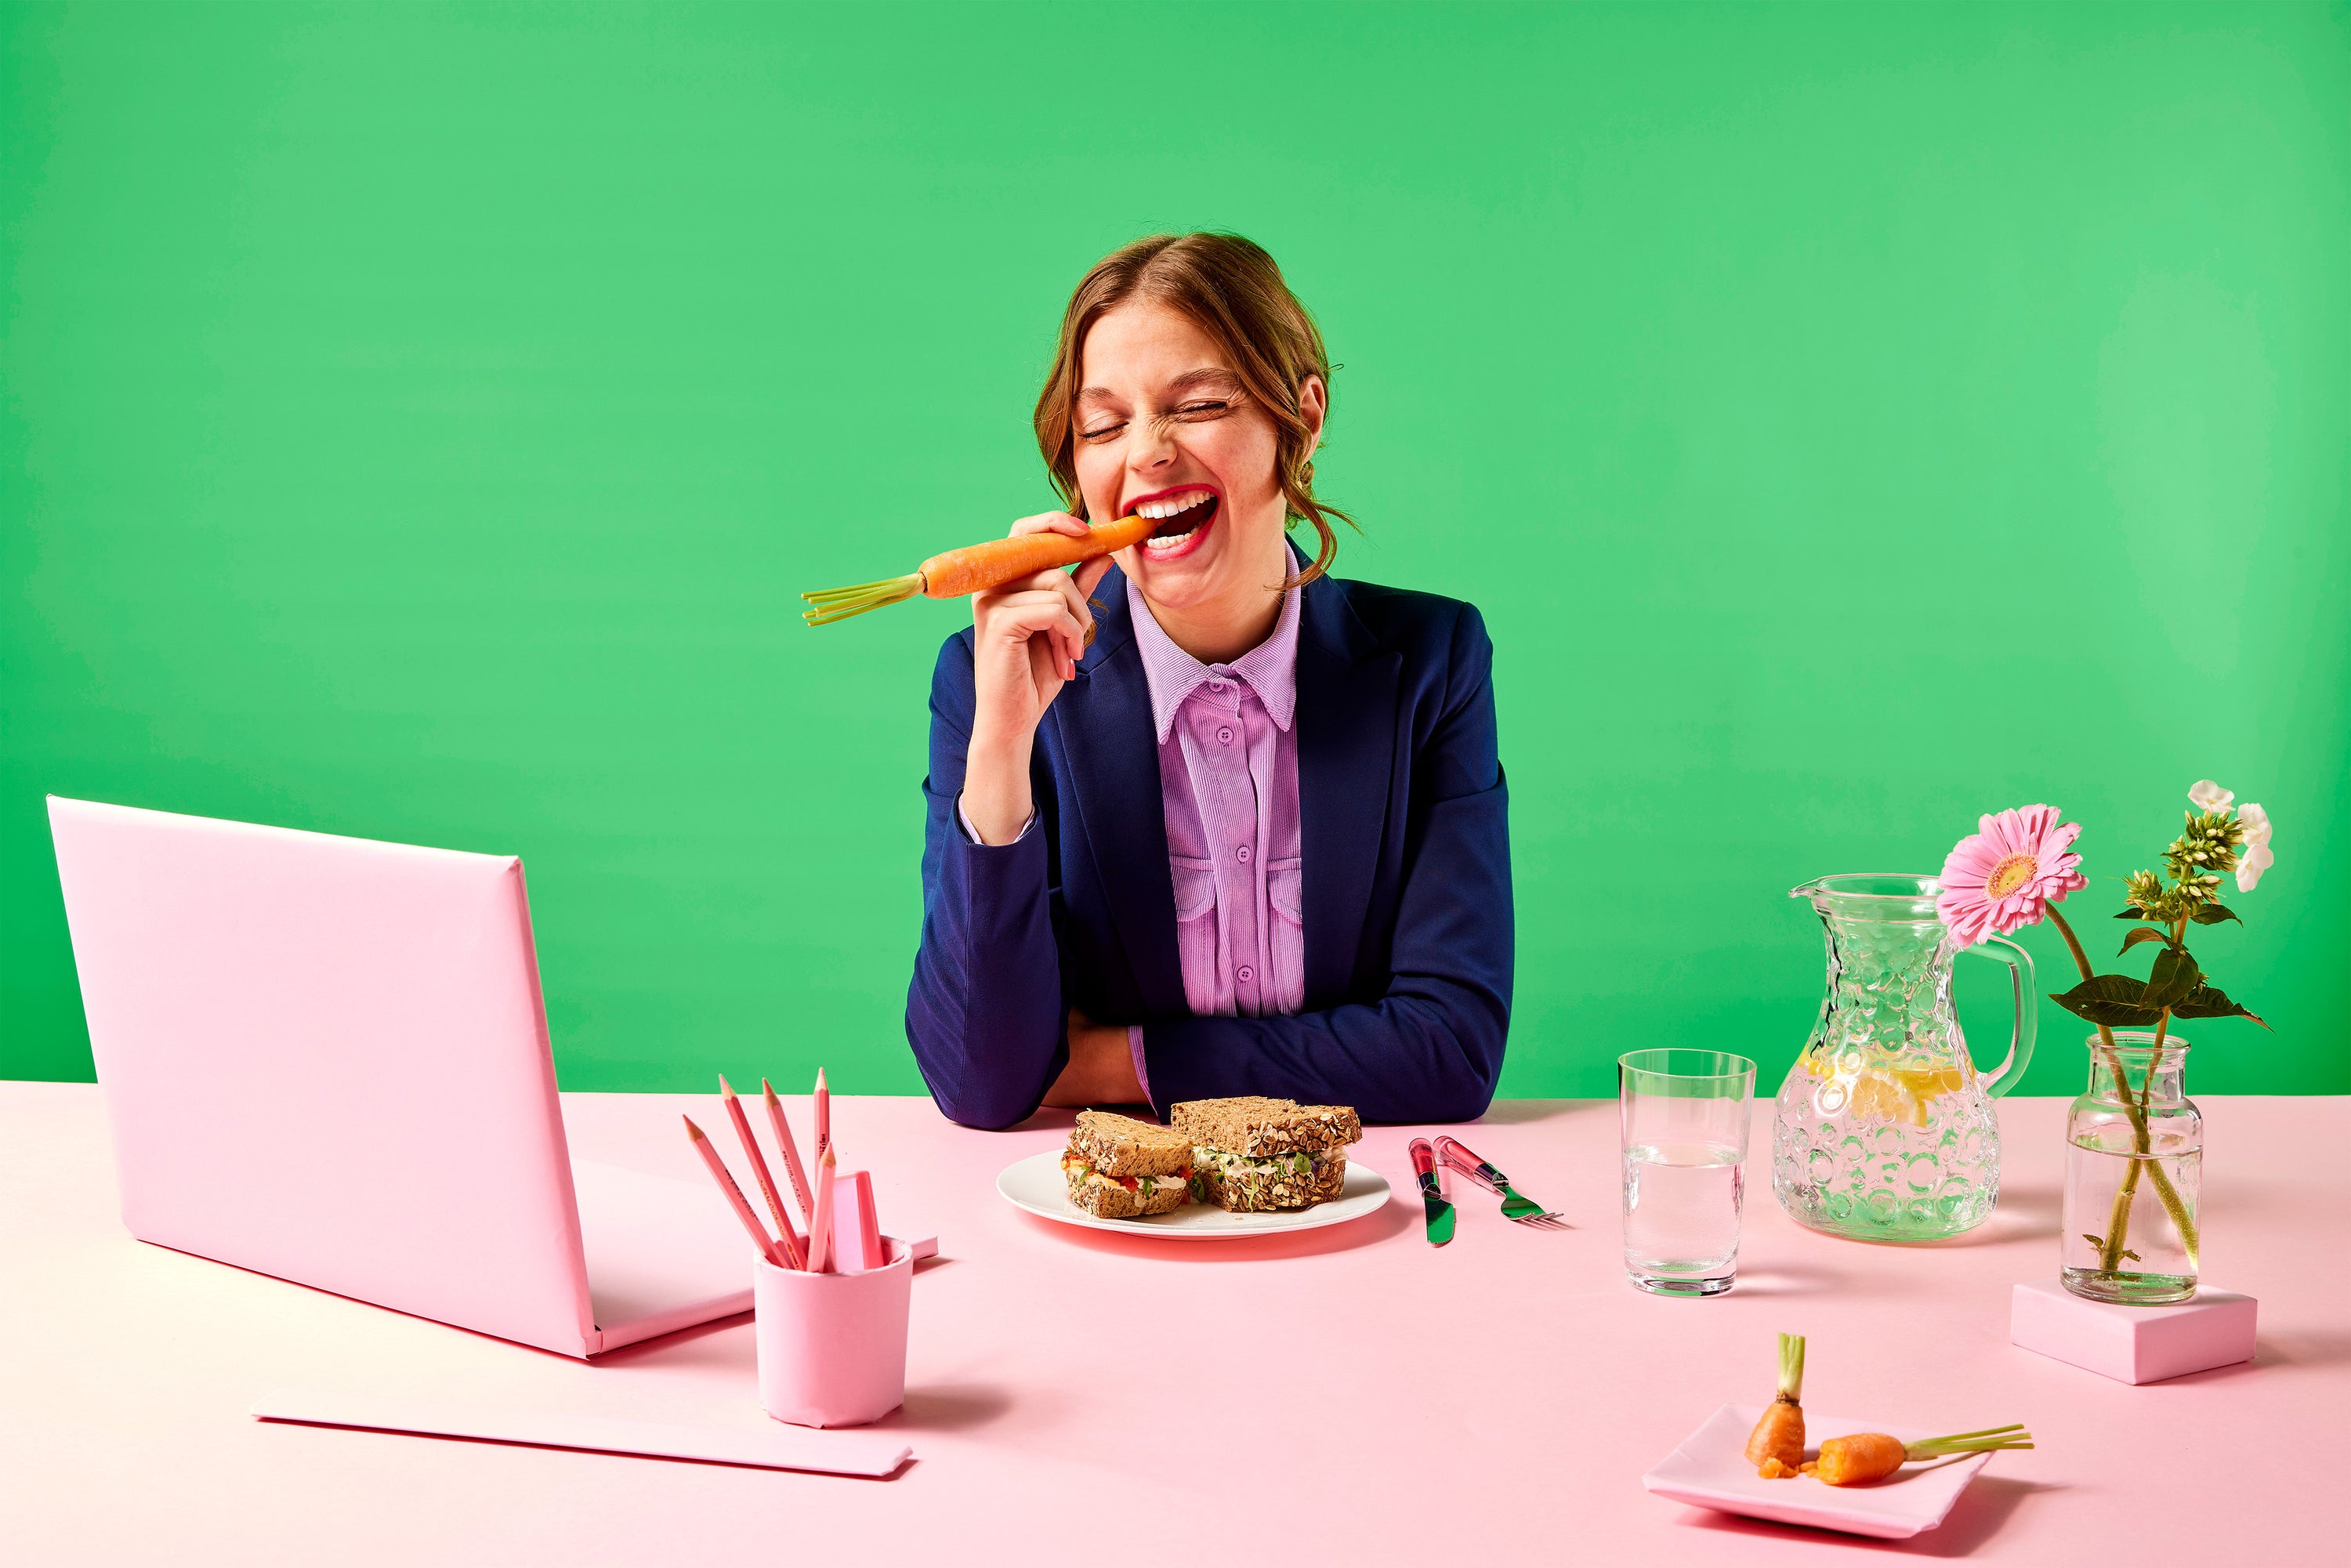 vrouw eet wortel in kleurrijke kantoorsetting, yummiz, vegetarisch